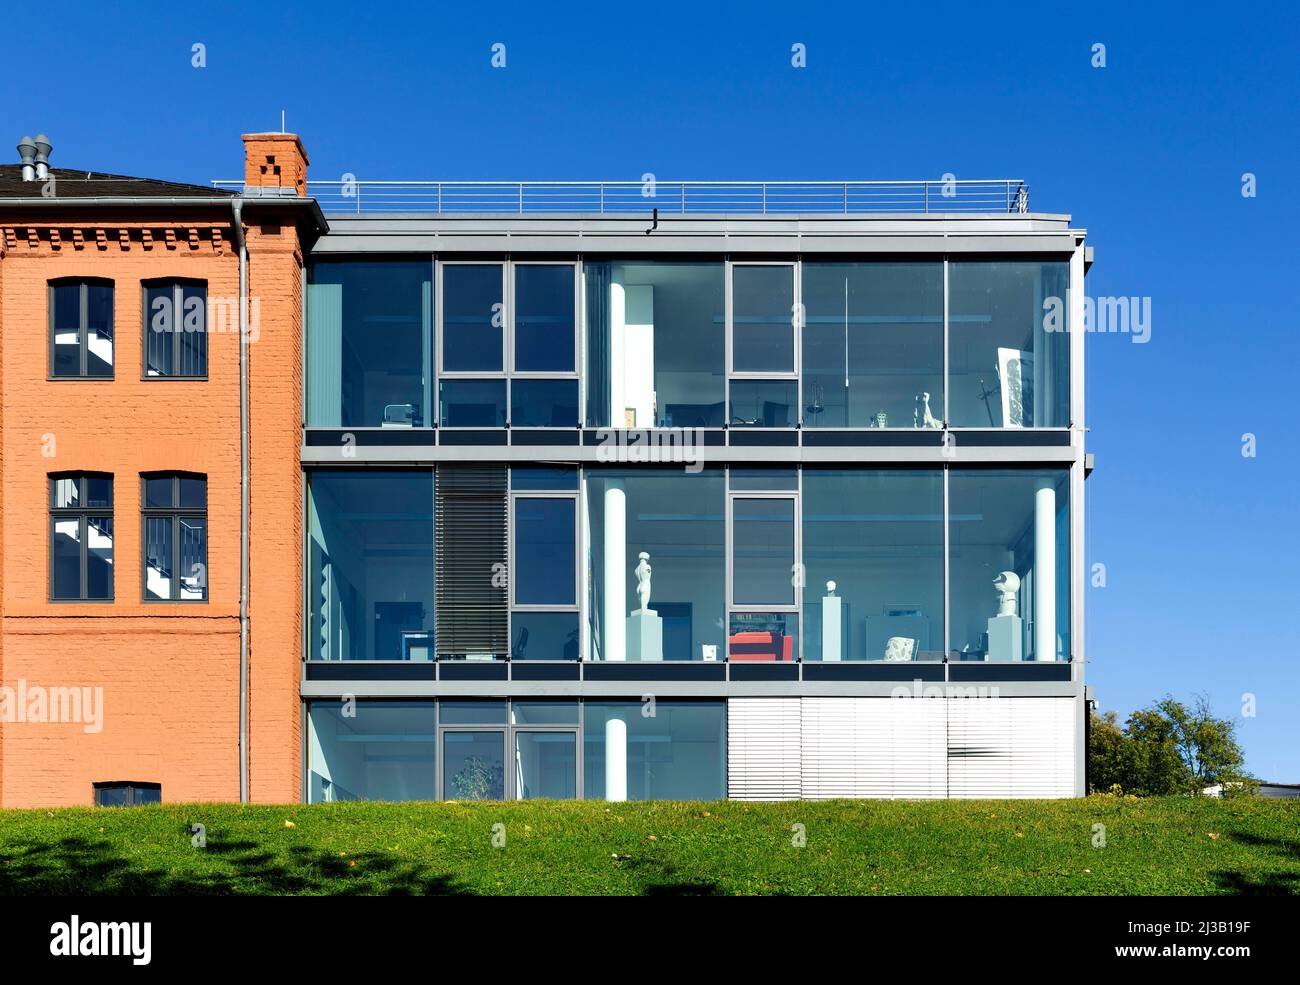 Directors villa, immeuble de bureaux, ancienne cimenterie de Portland, quartier urbain de Bonner Bogen, Bonn, Rhénanie-du-Nord-Westphalie, Allemagne Banque D'Images